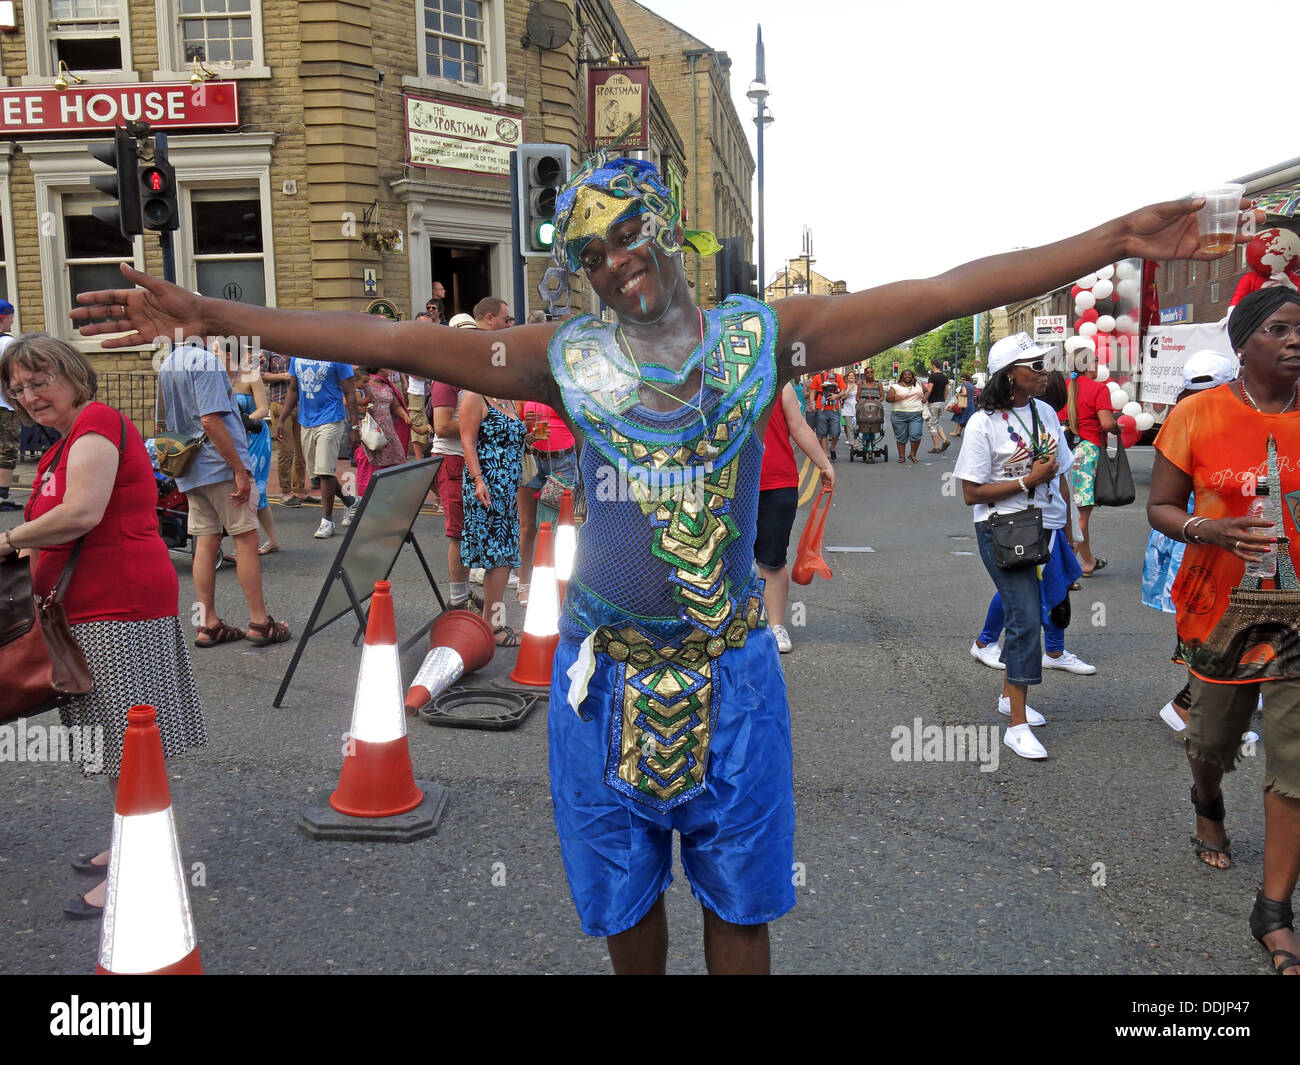 Danseur costumé en bleu de Huddersfield Carnival parade 2013 fête de rue Africains des Caraïbes Banque D'Images